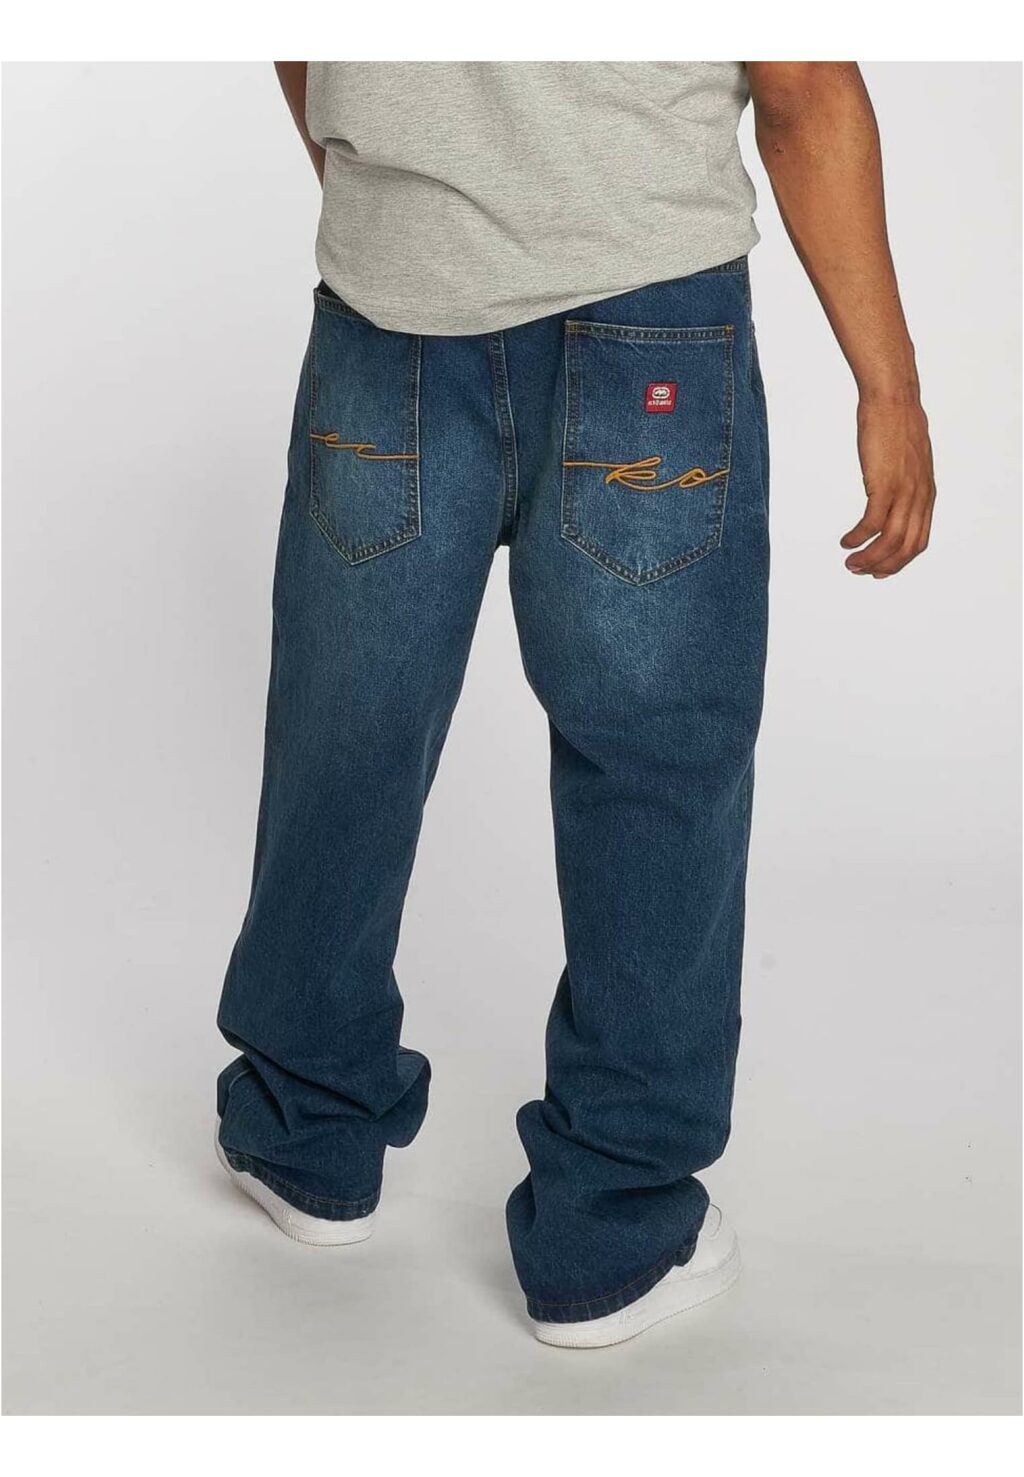 Ecko Unltd. Fat Bro Baggy Jeans blue W34 ECKOJS1001